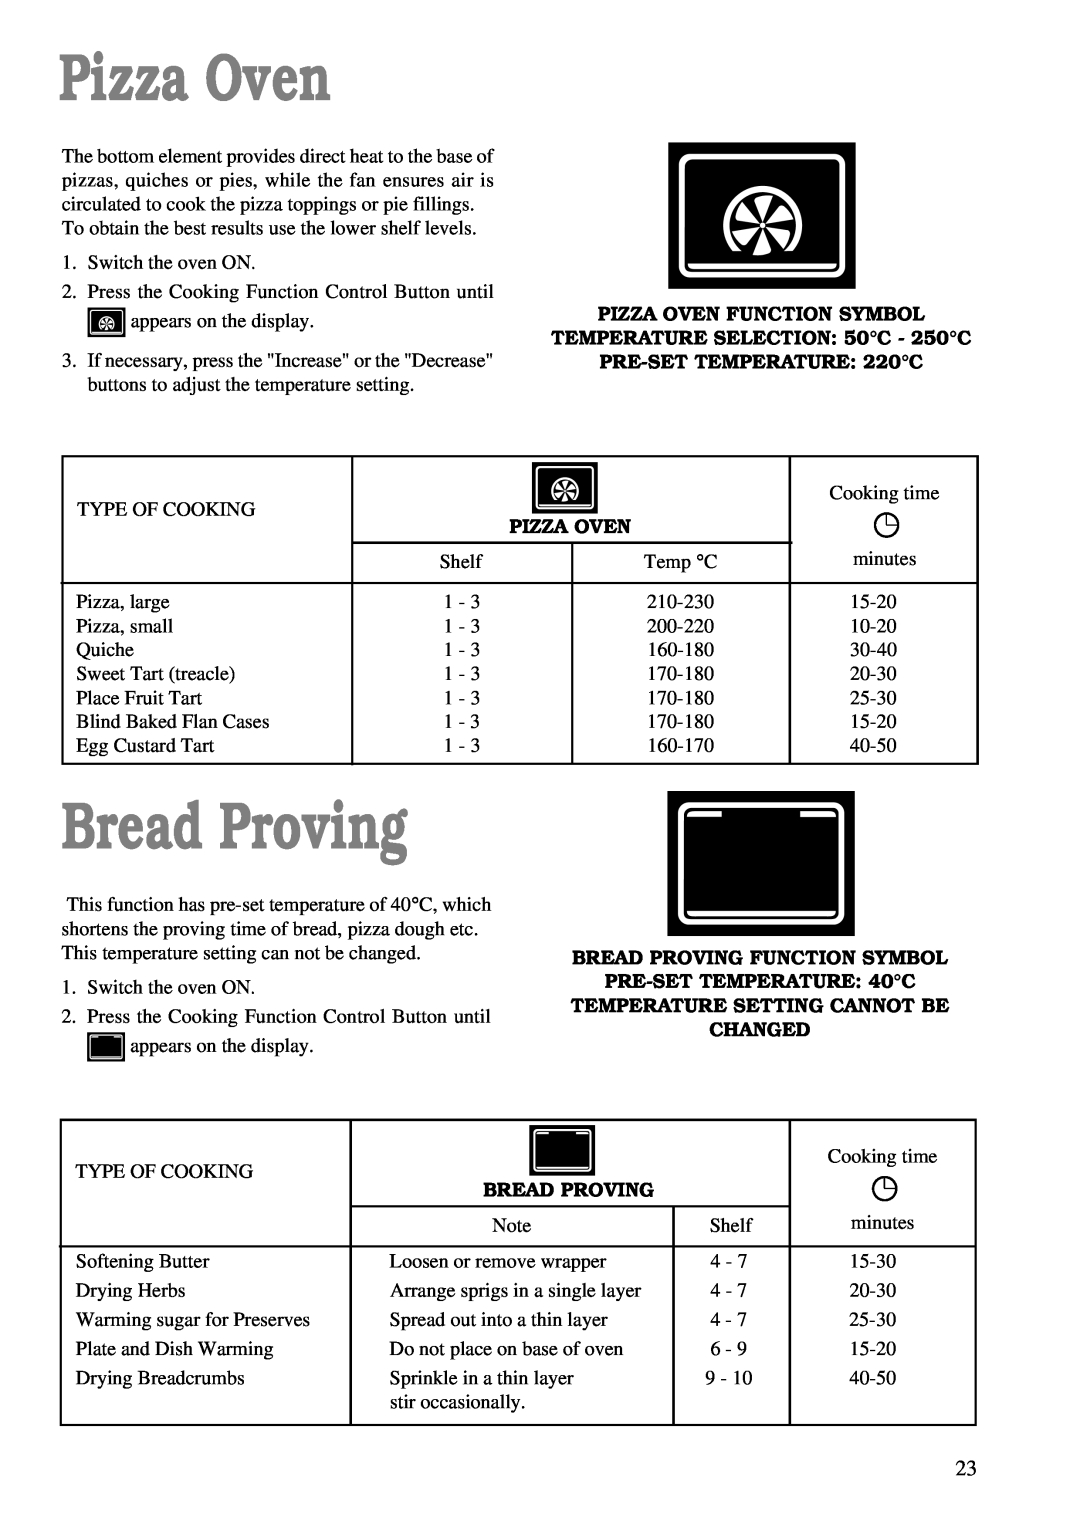 Zanussi ZBM 890 Bread Proving, Pizza Oven Function Symbol, TEMPERATURE SELECTION 50C - 250C, PRE-SETTEMPERATURE 220C 